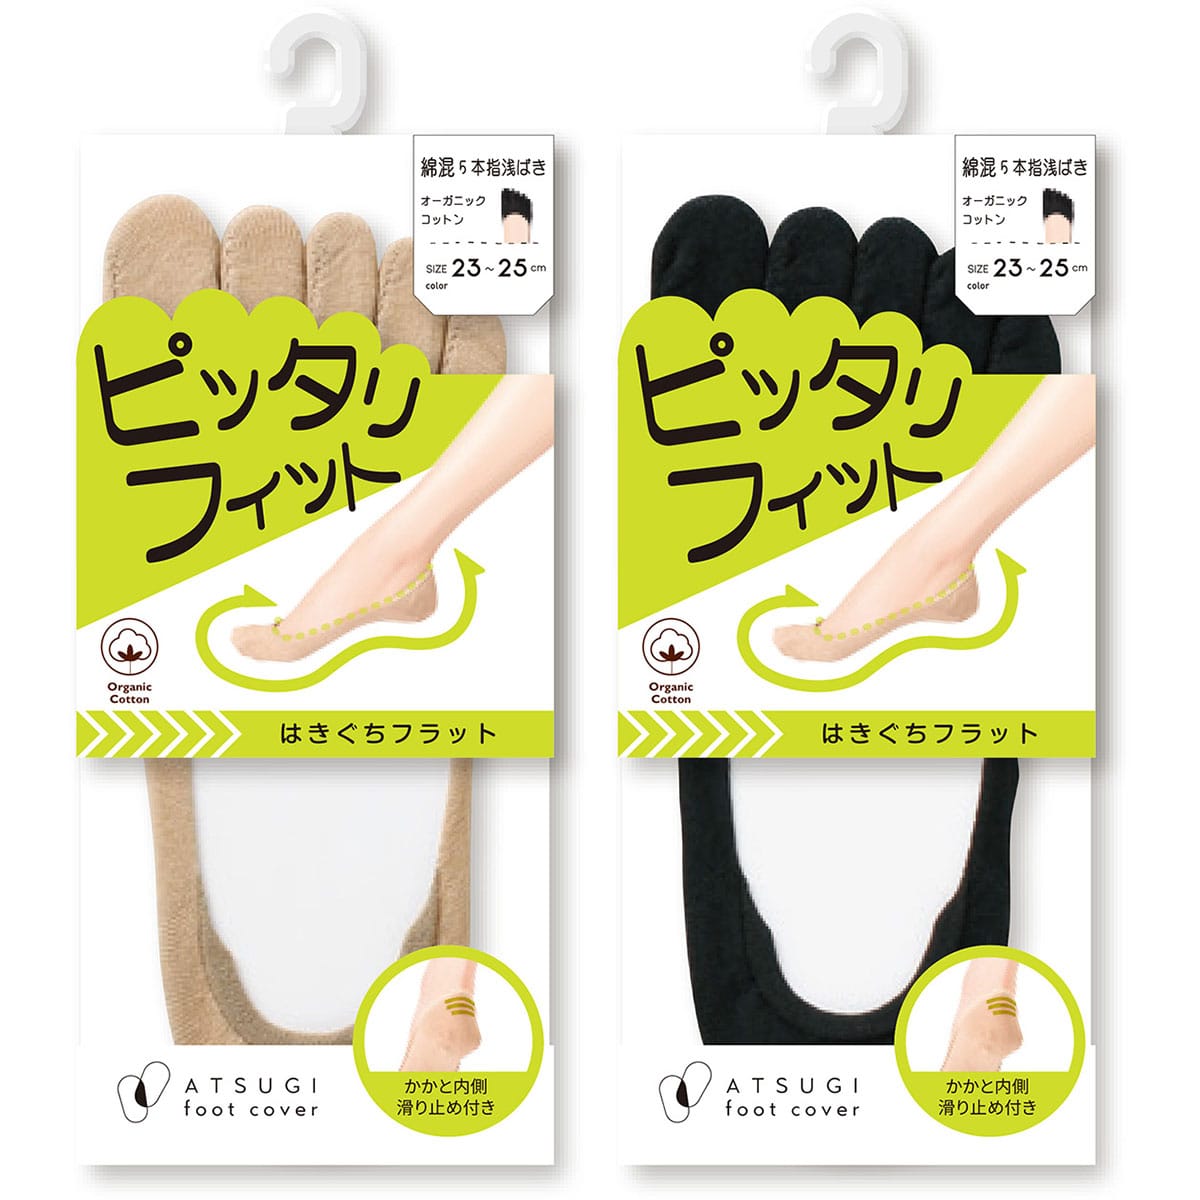 公式) ATSUGI Foot cover / アツギフットカバー ピッタリフィット 綿混 5本指 浅ばきフットカバー |  ATSUGI（アツギ）公式直販